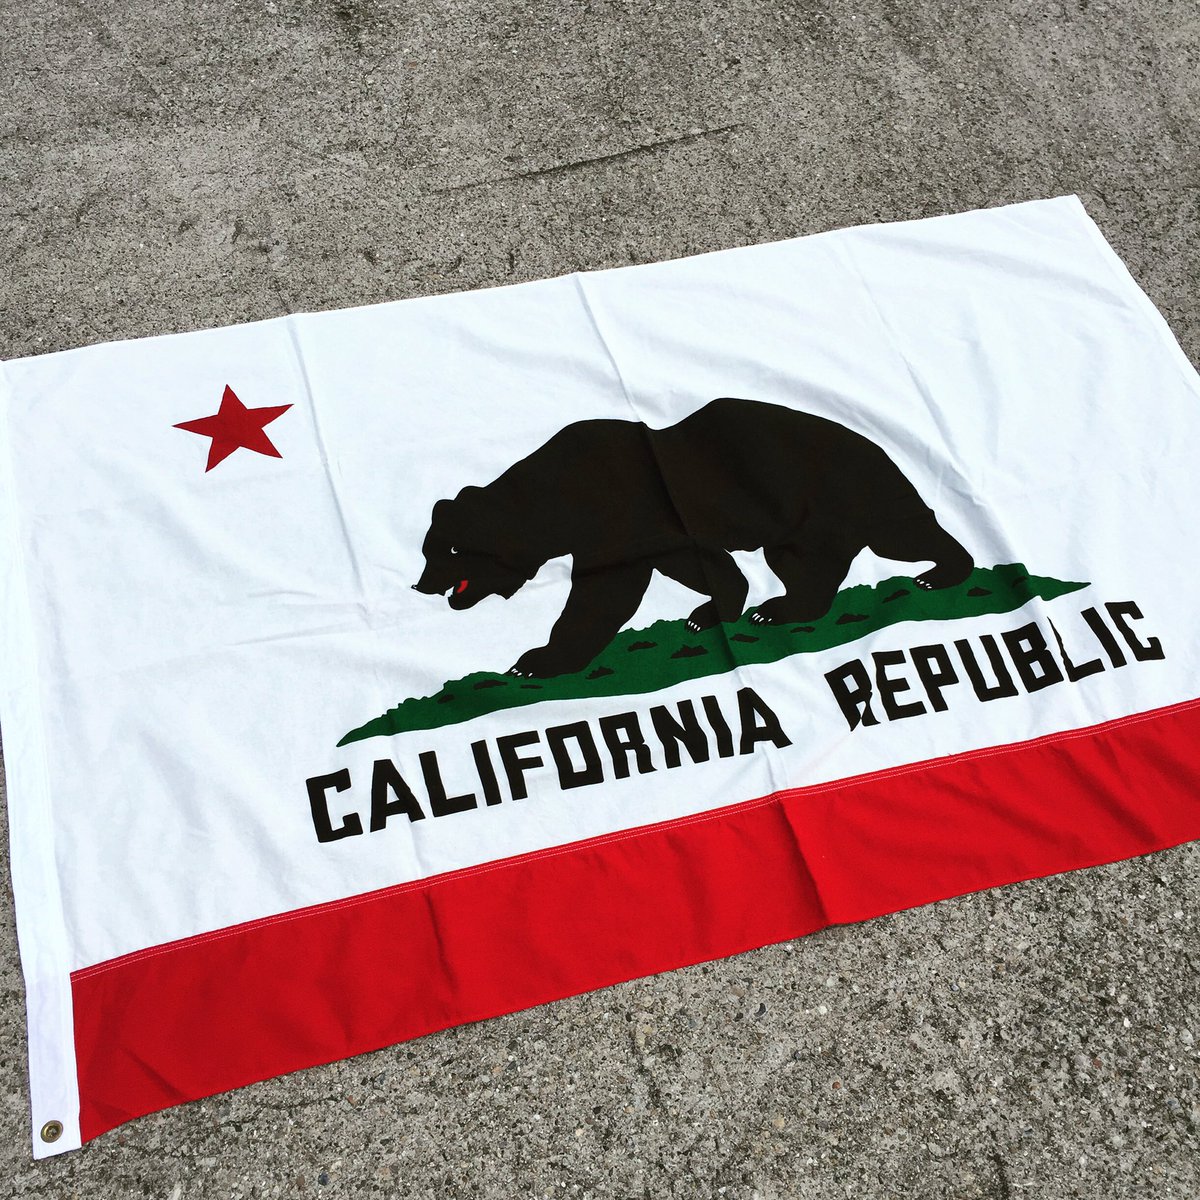 カリフォルニア州旗